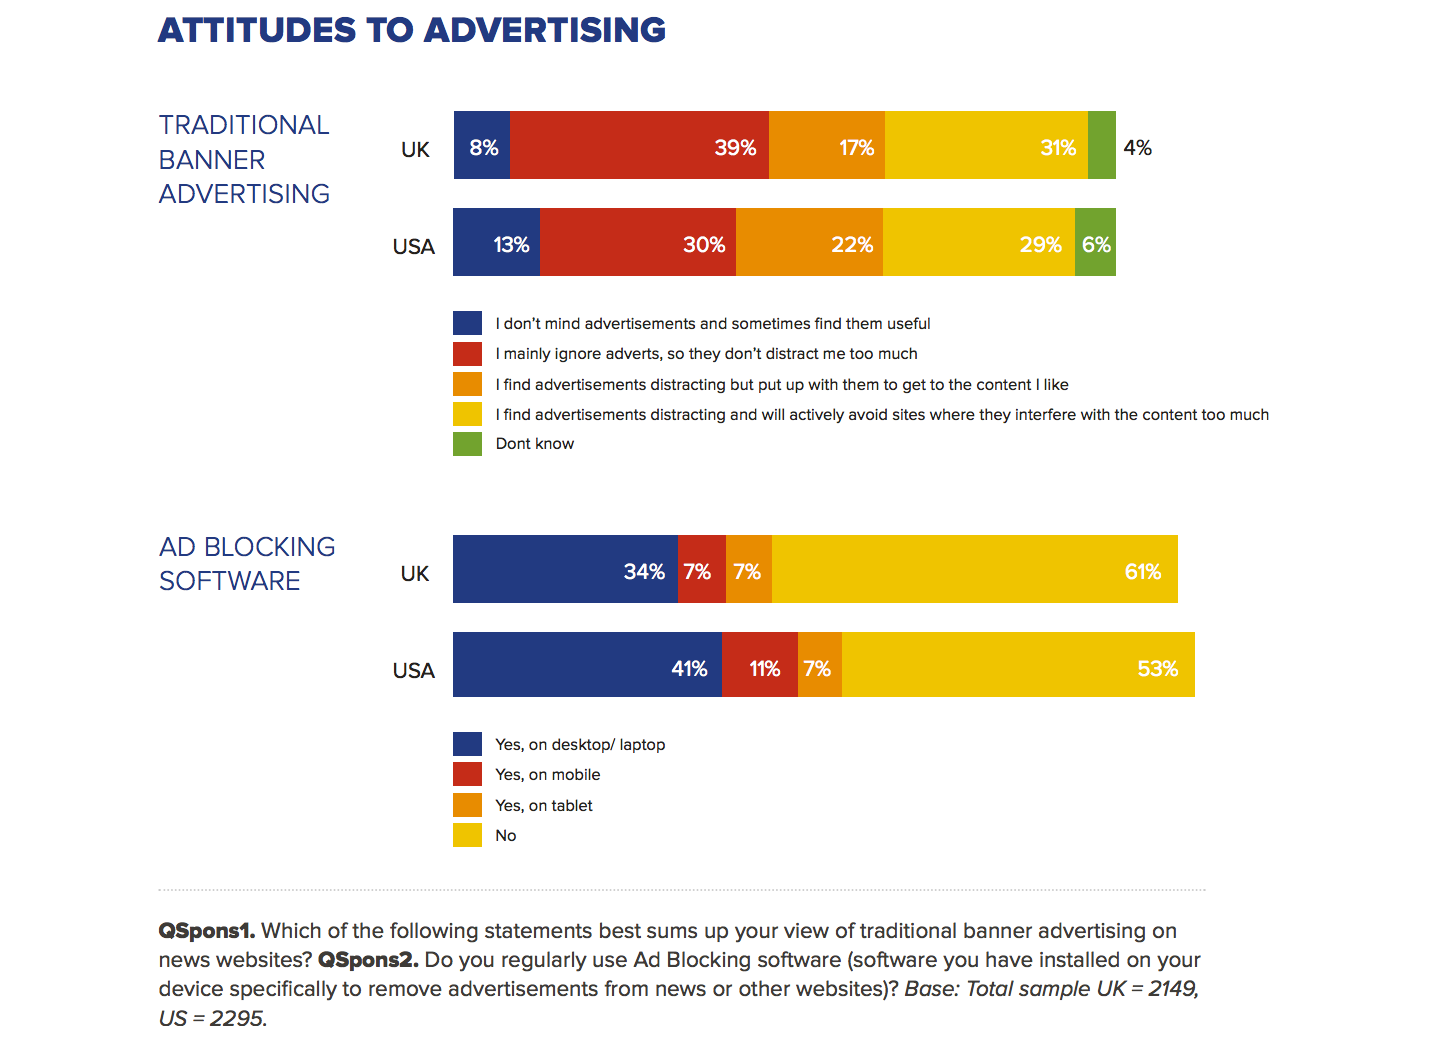 Reuters Institute. Digital News Report 2015. Attitudes to advertising (ad blocking).